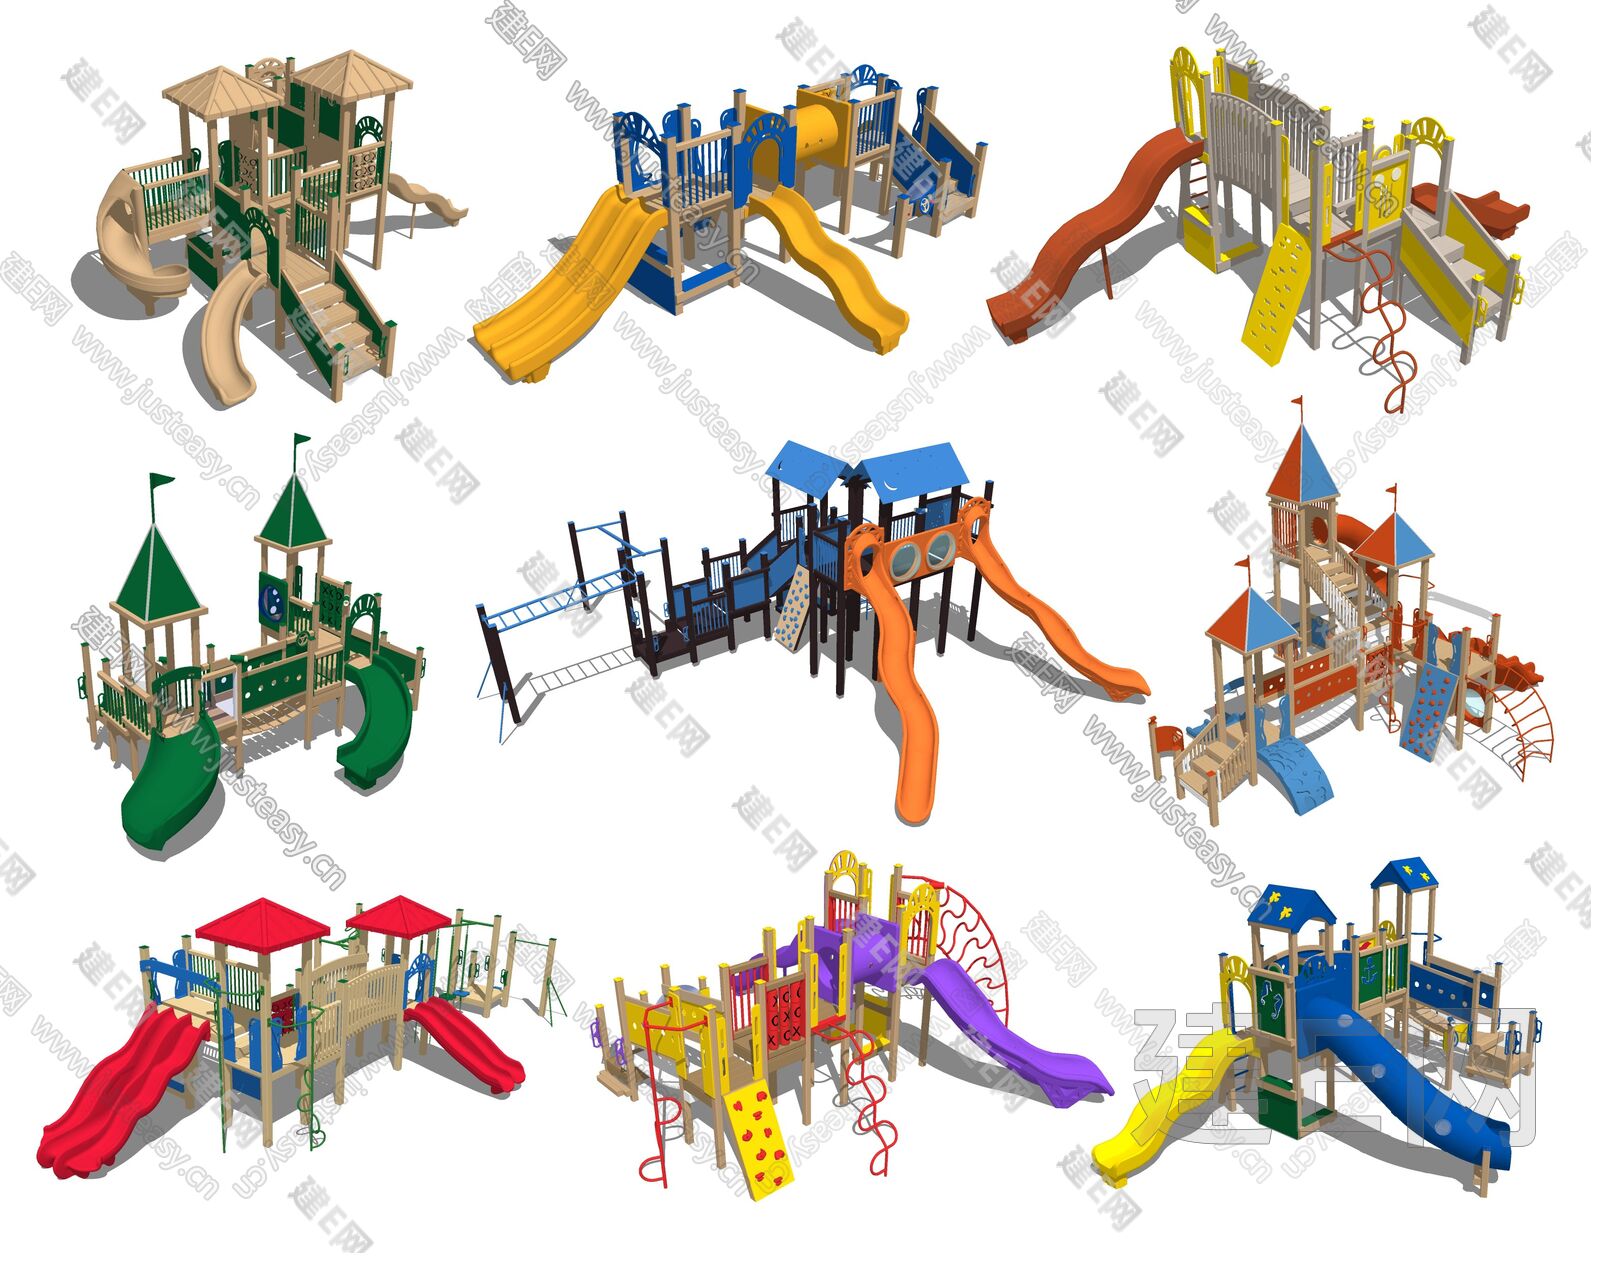 厂家直供丨幼儿园滑梯-幼儿园家具-绳网攀爬-幼儿园教玩具-广州市乔斯实业有限公司